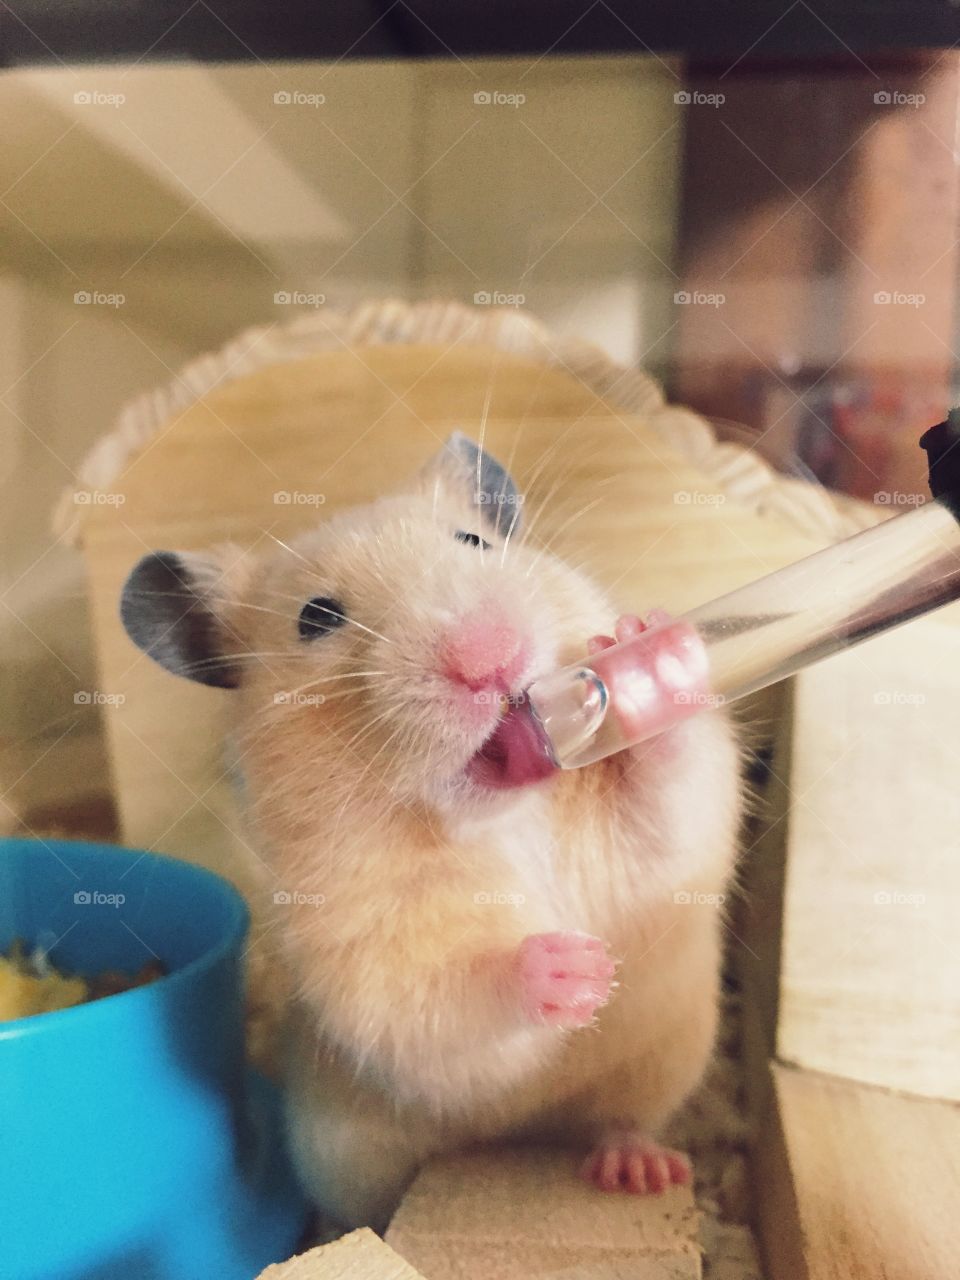 Mi little hamster drinking water